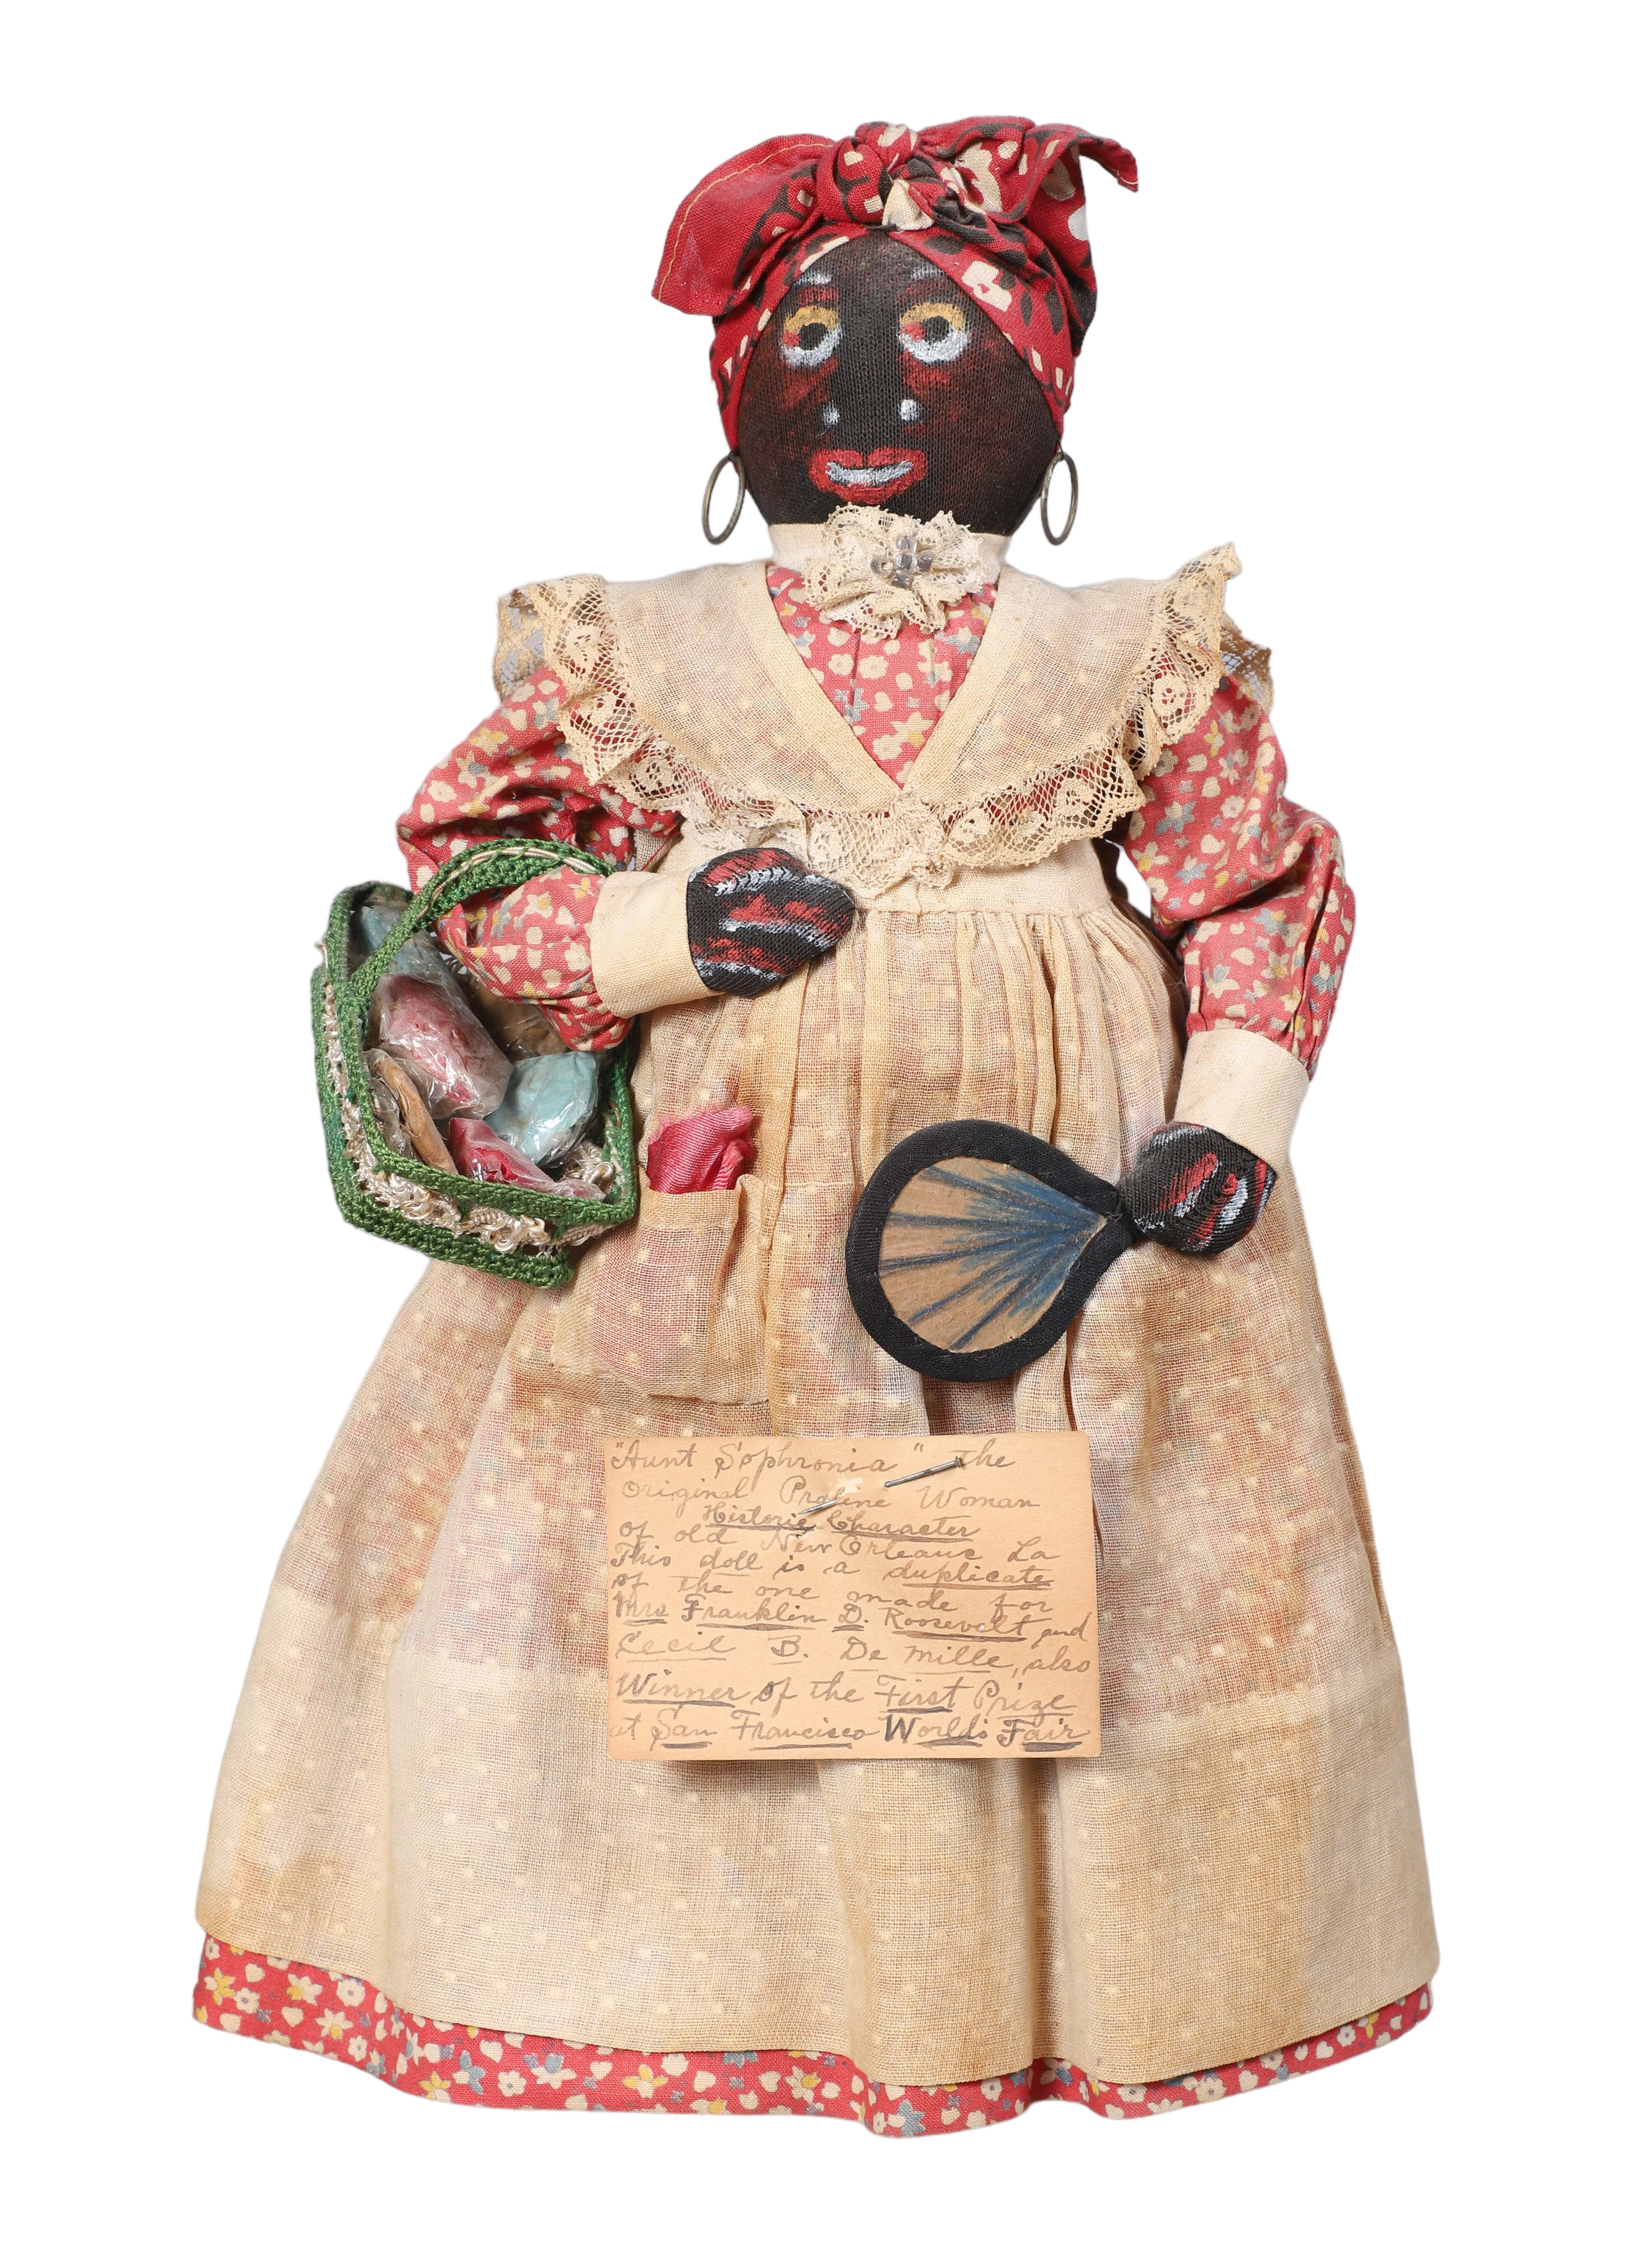 Black Americana cloth doll, in